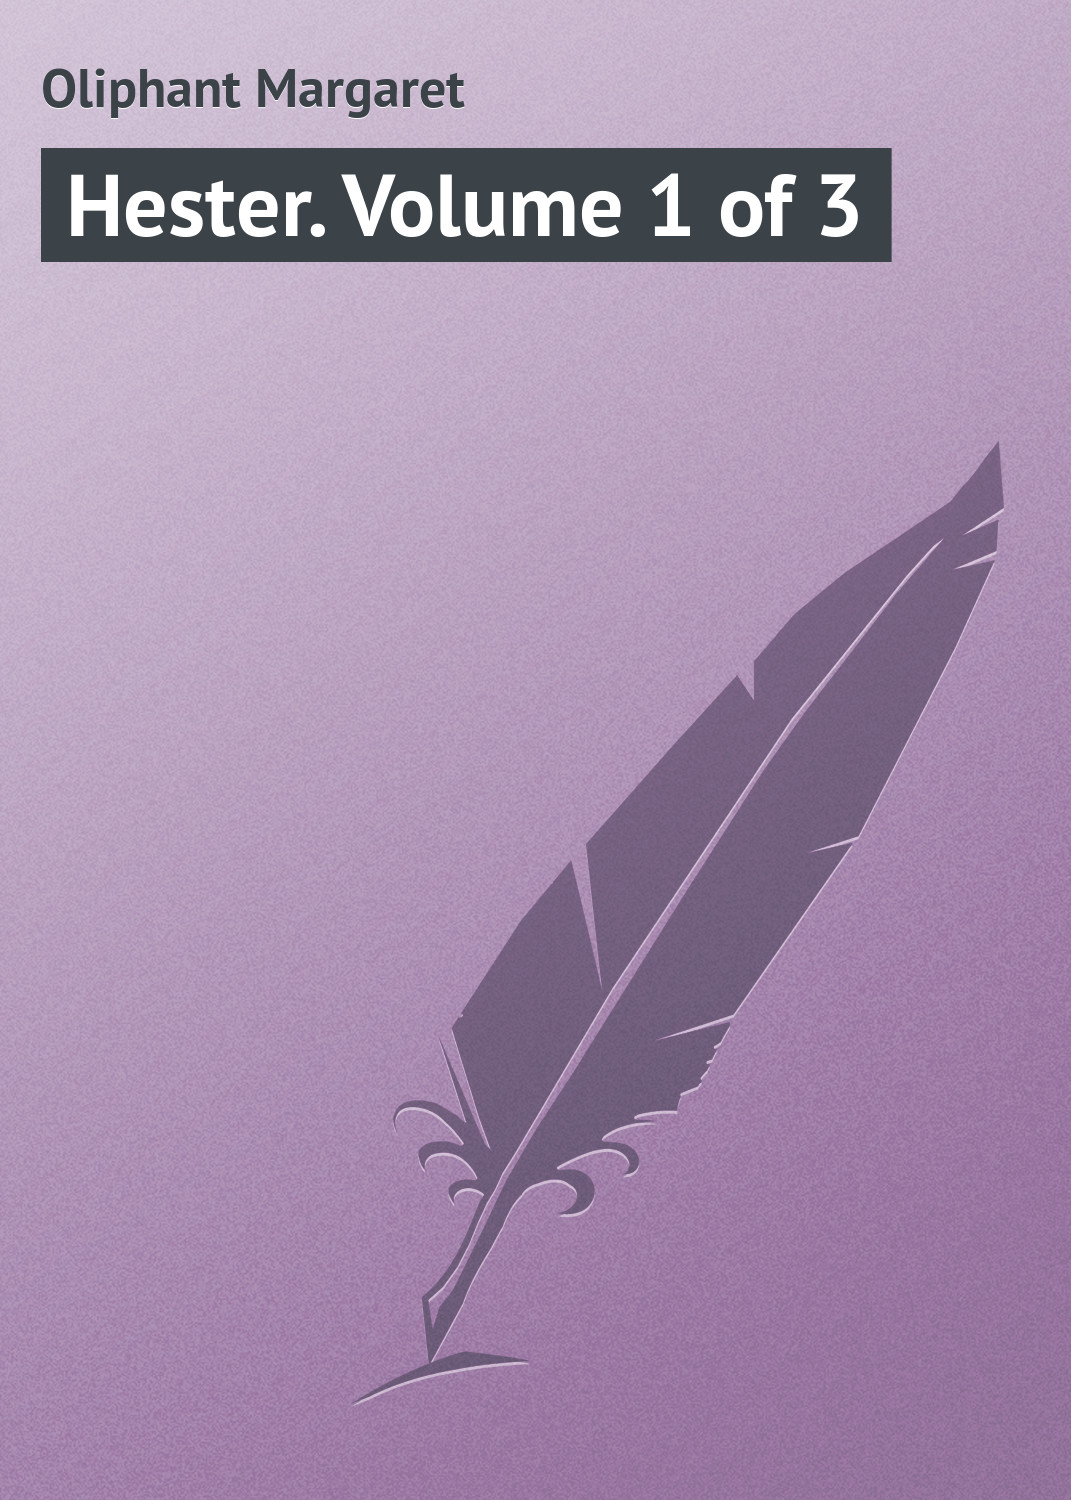 Книга Hester. Volume 1 of 3 из серии , созданная Margaret Oliphant, может относится к жанру Зарубежная классика, Иностранные языки. Стоимость электронной книги Hester. Volume 1 of 3 с идентификатором 23162731 составляет 5.99 руб.